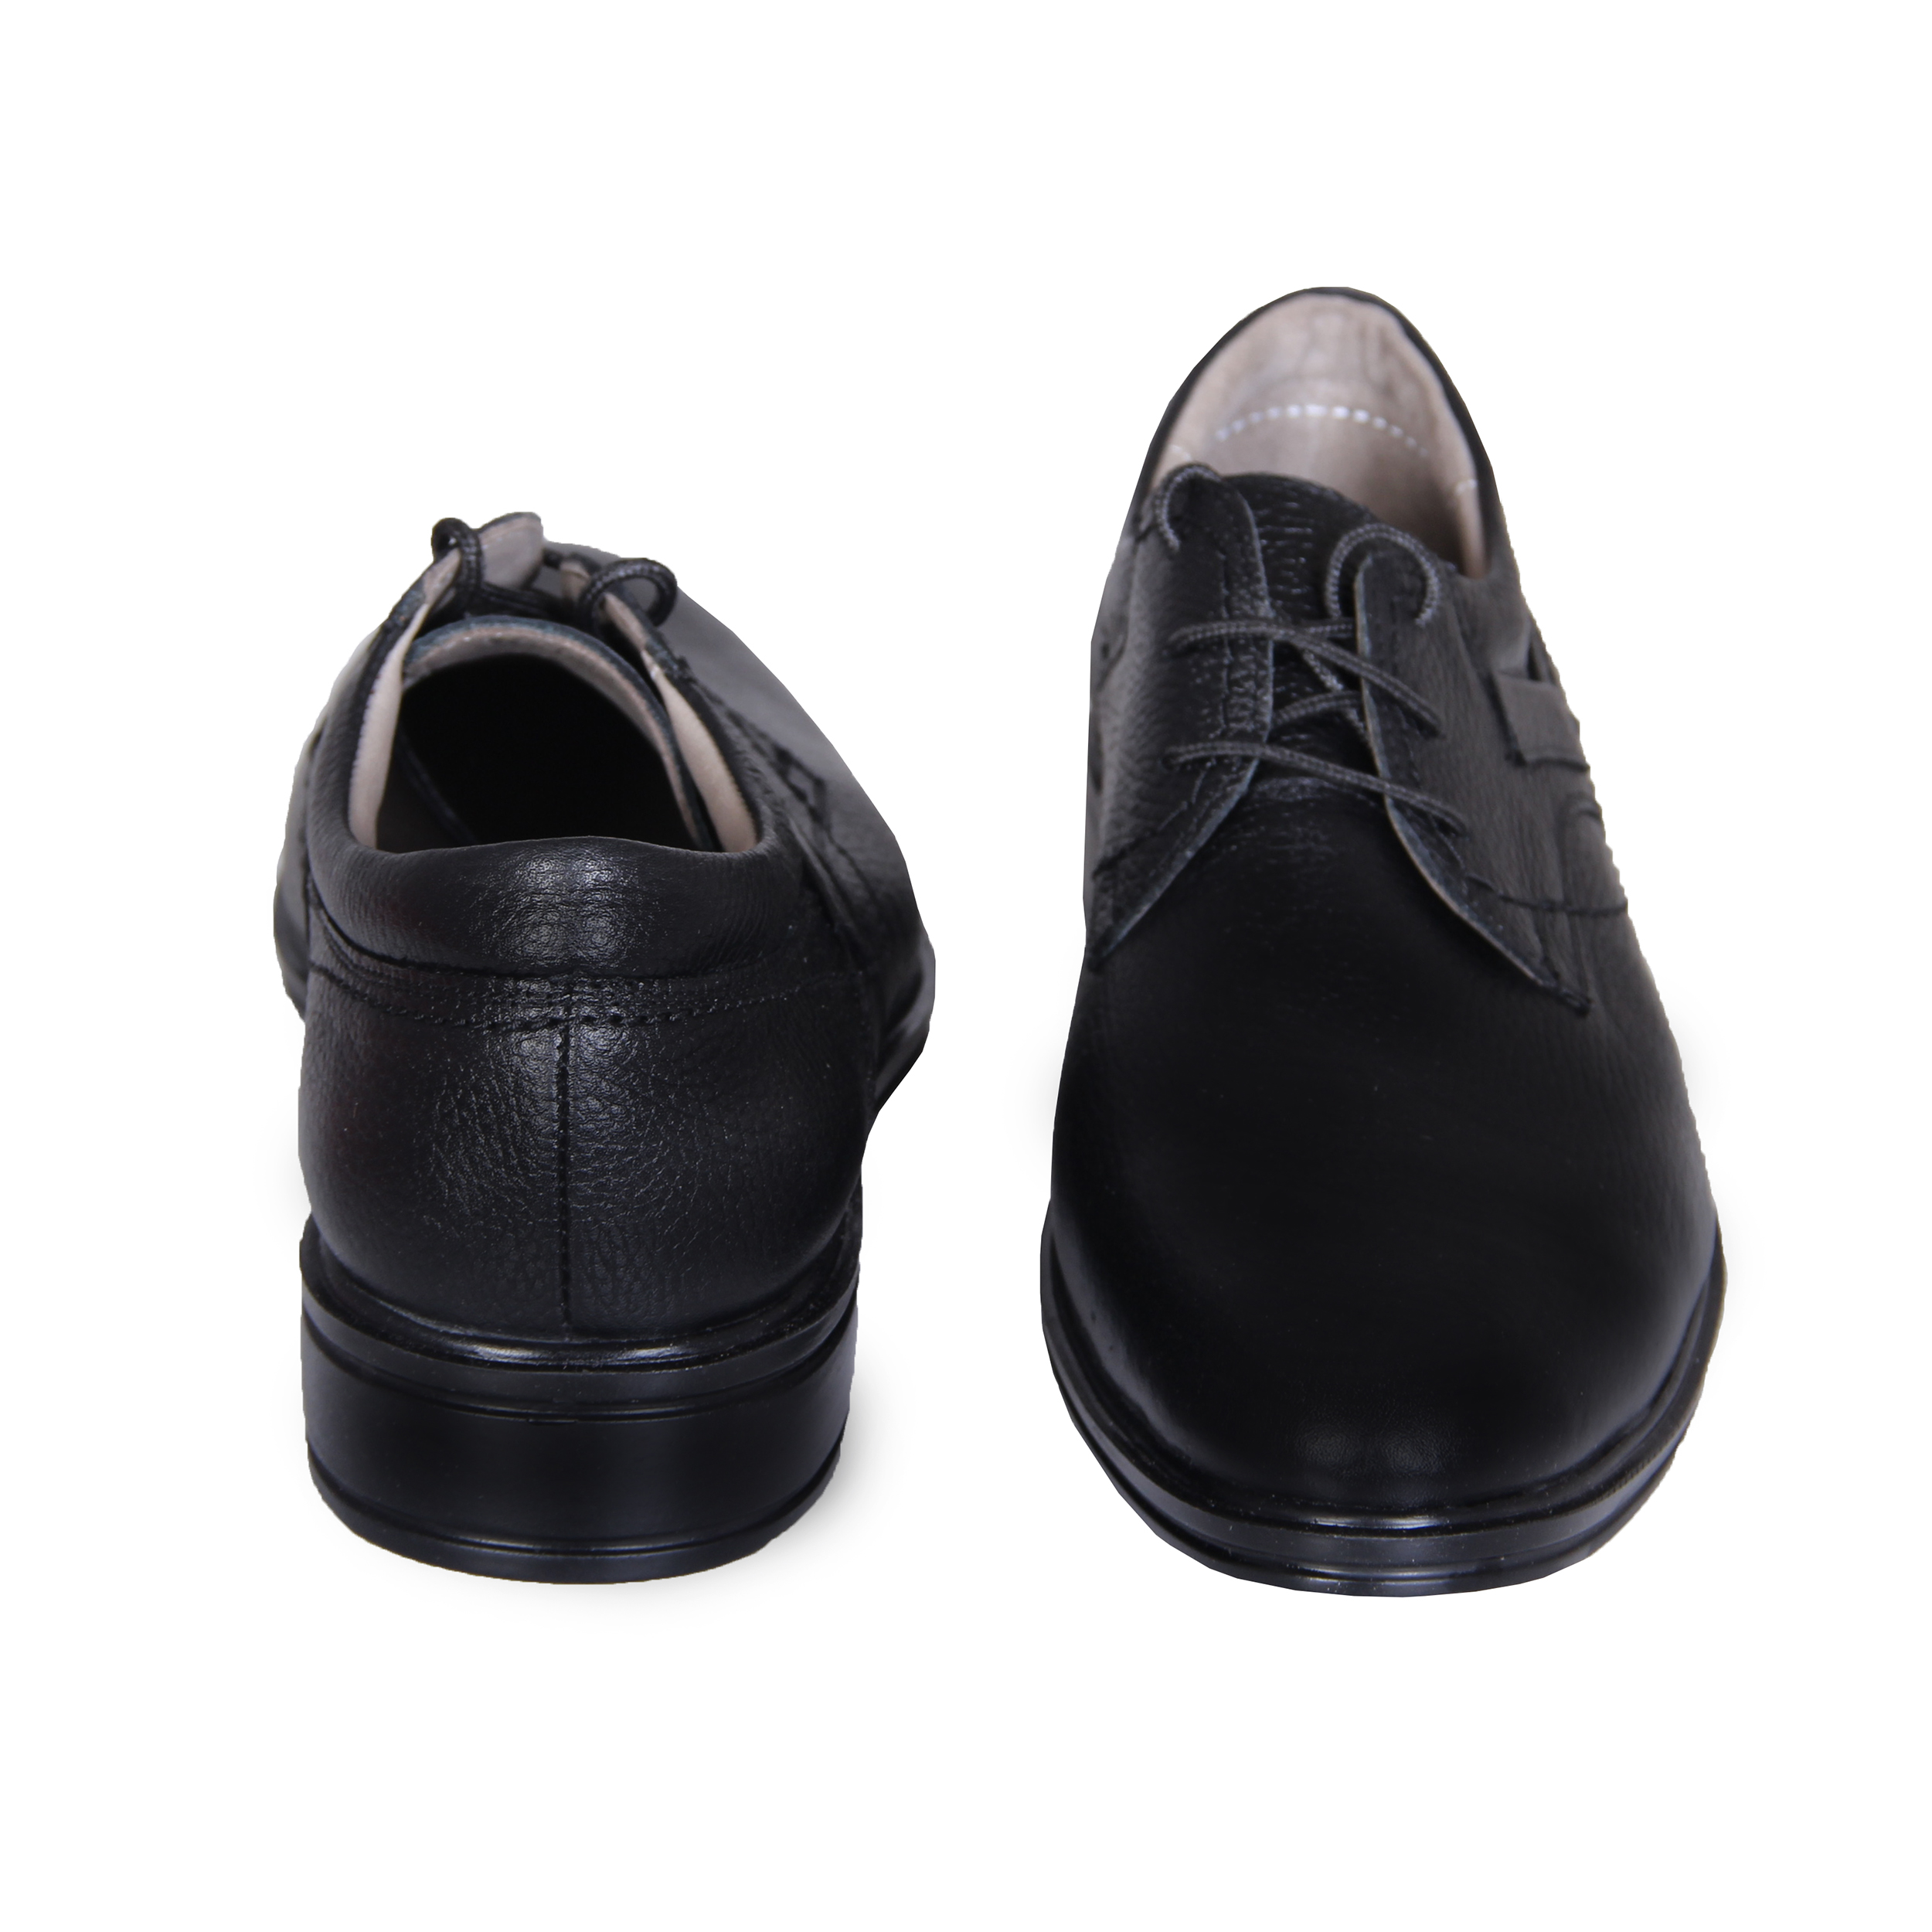 SHAHRECHARM leather men's shoes , F6028-1 Model